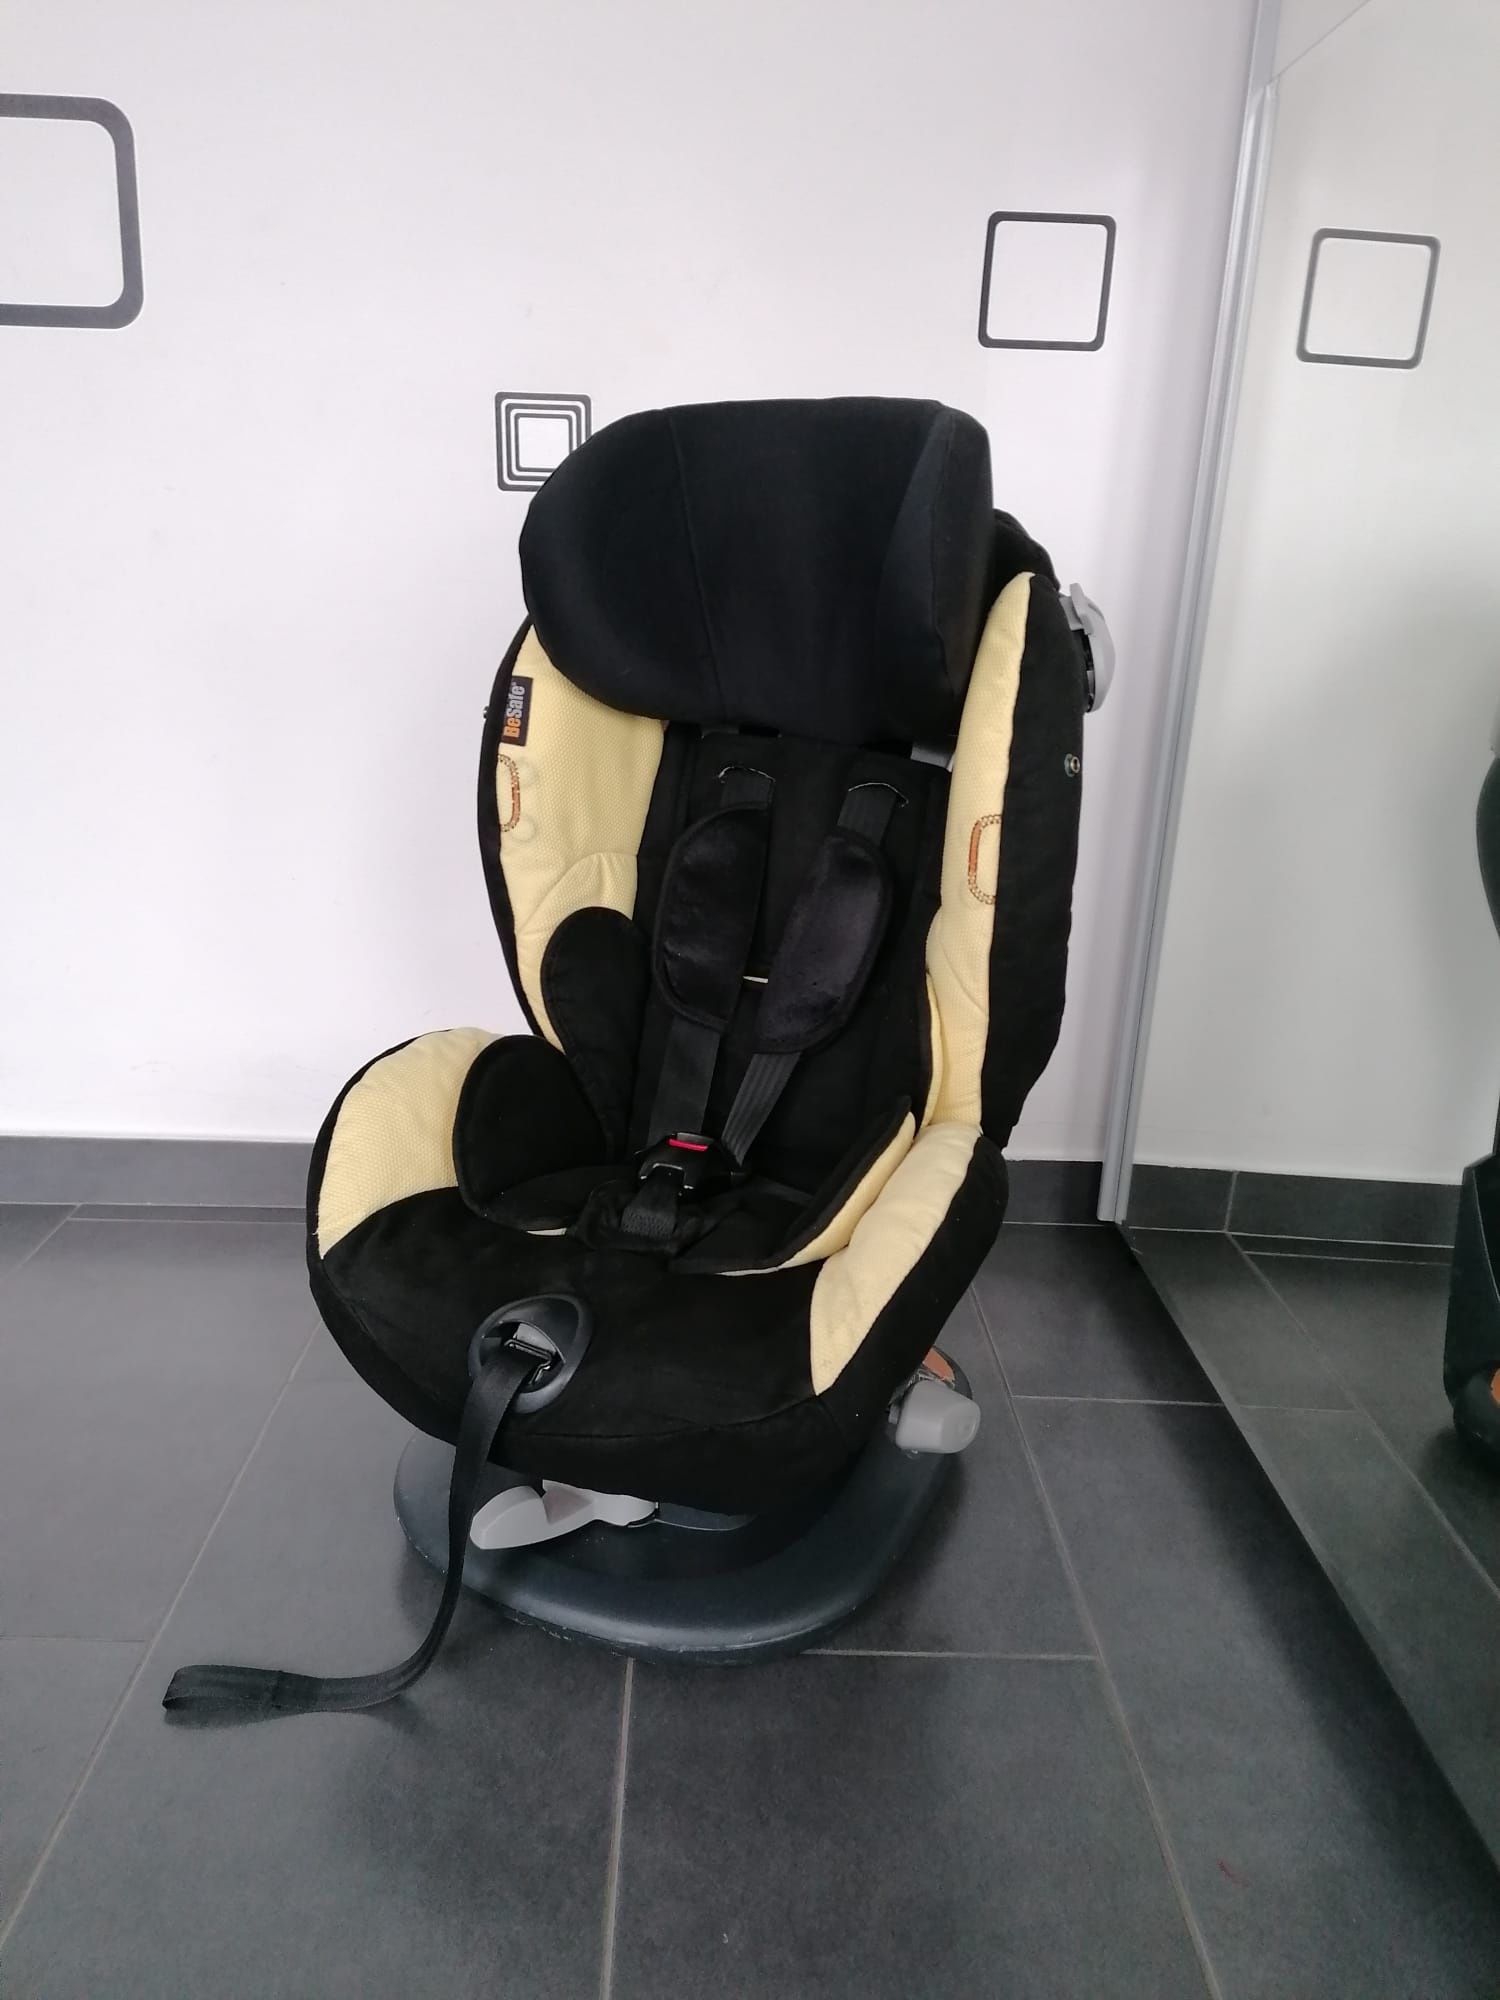 Scaun auto BeSafe Ziua Comfort X3 pentru copii intre 9 și 18 kg